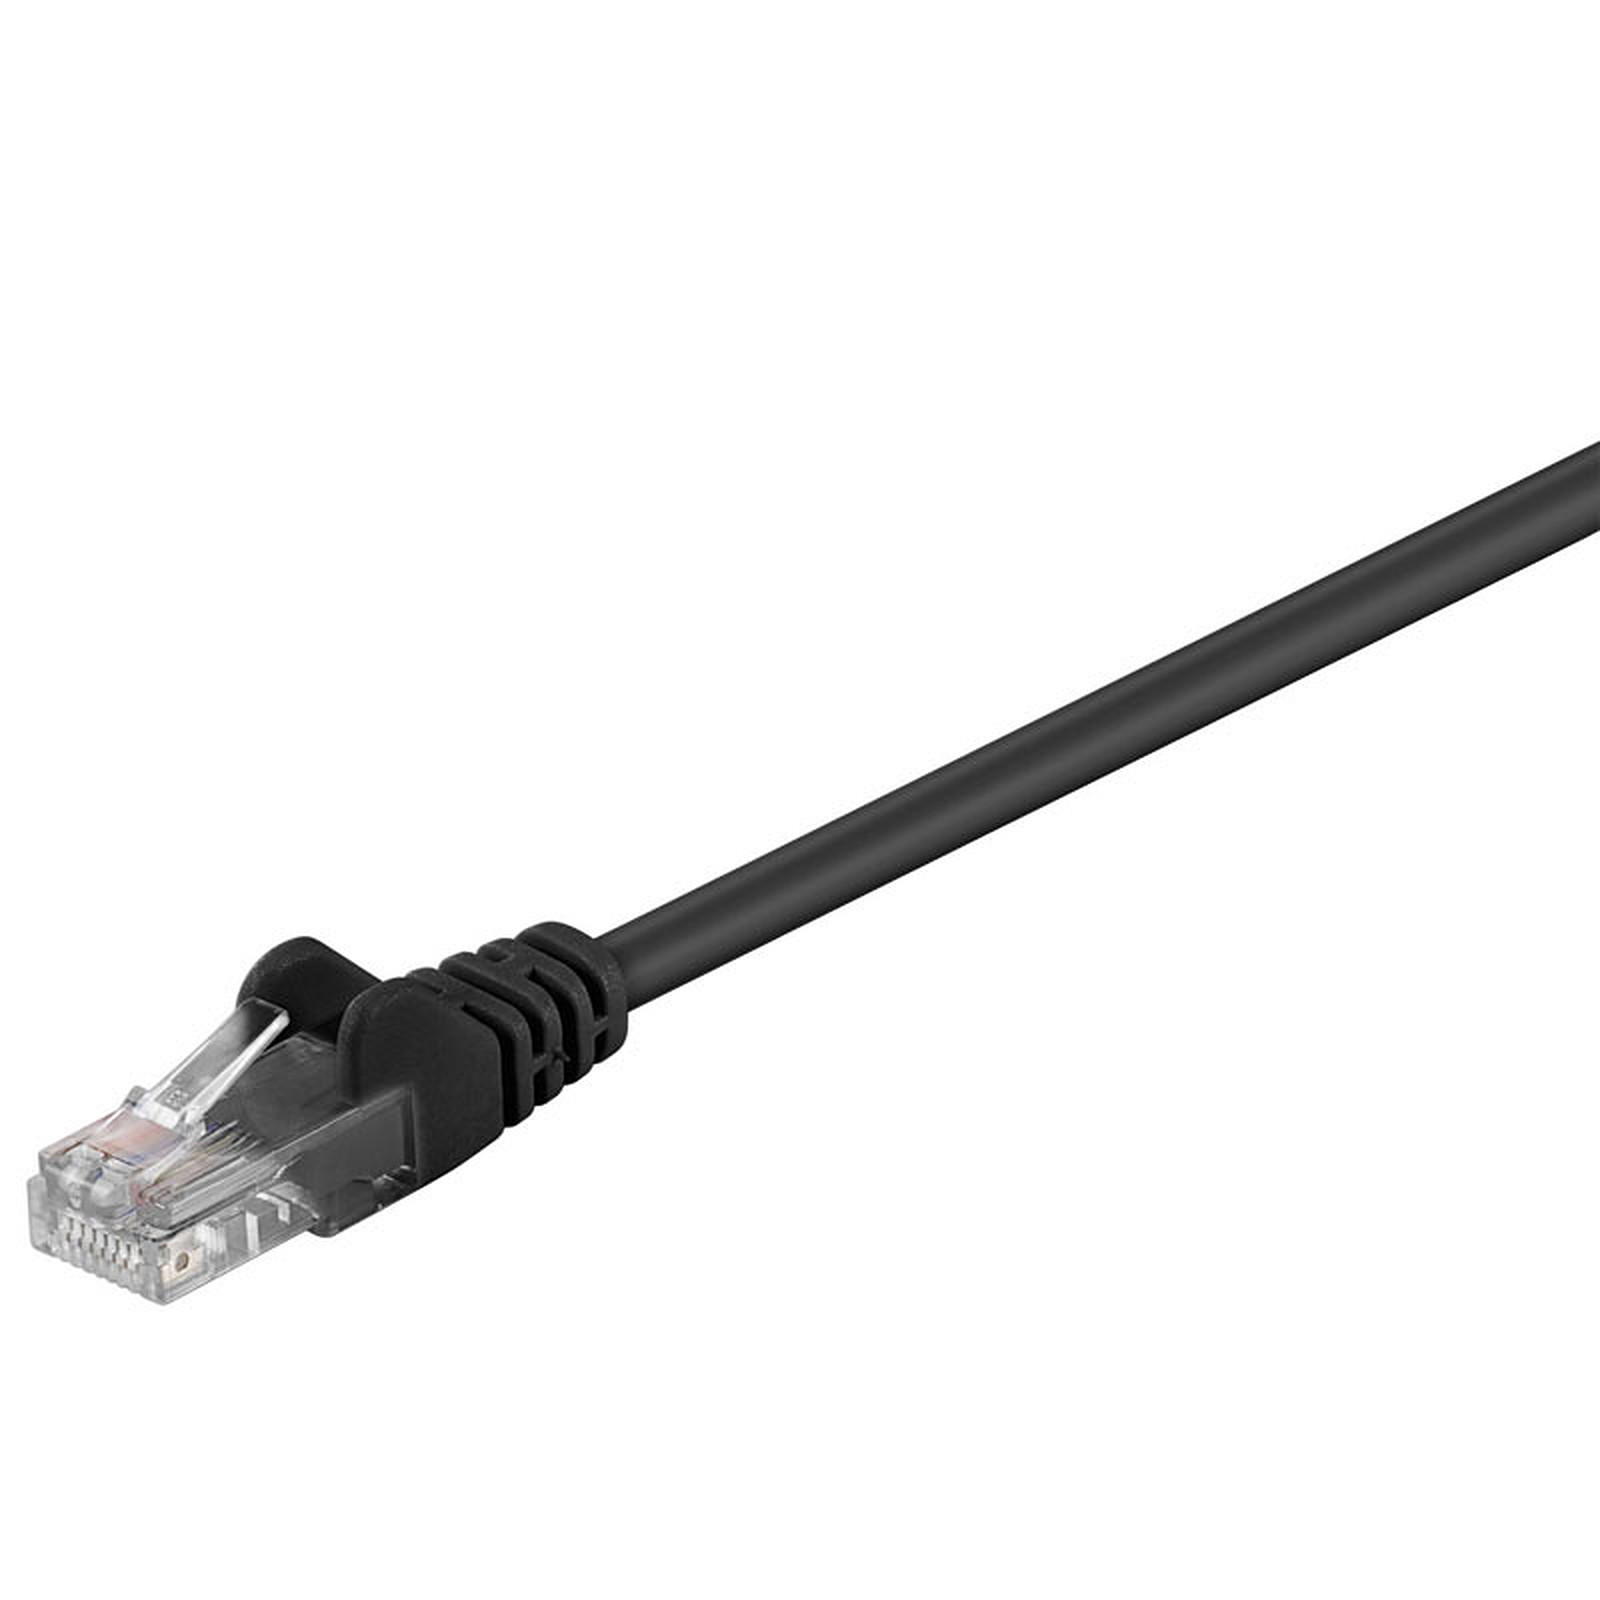 Cable RJ45 categorie 5e U/UTP 3 m (Noir) - Cable RJ45 Generique